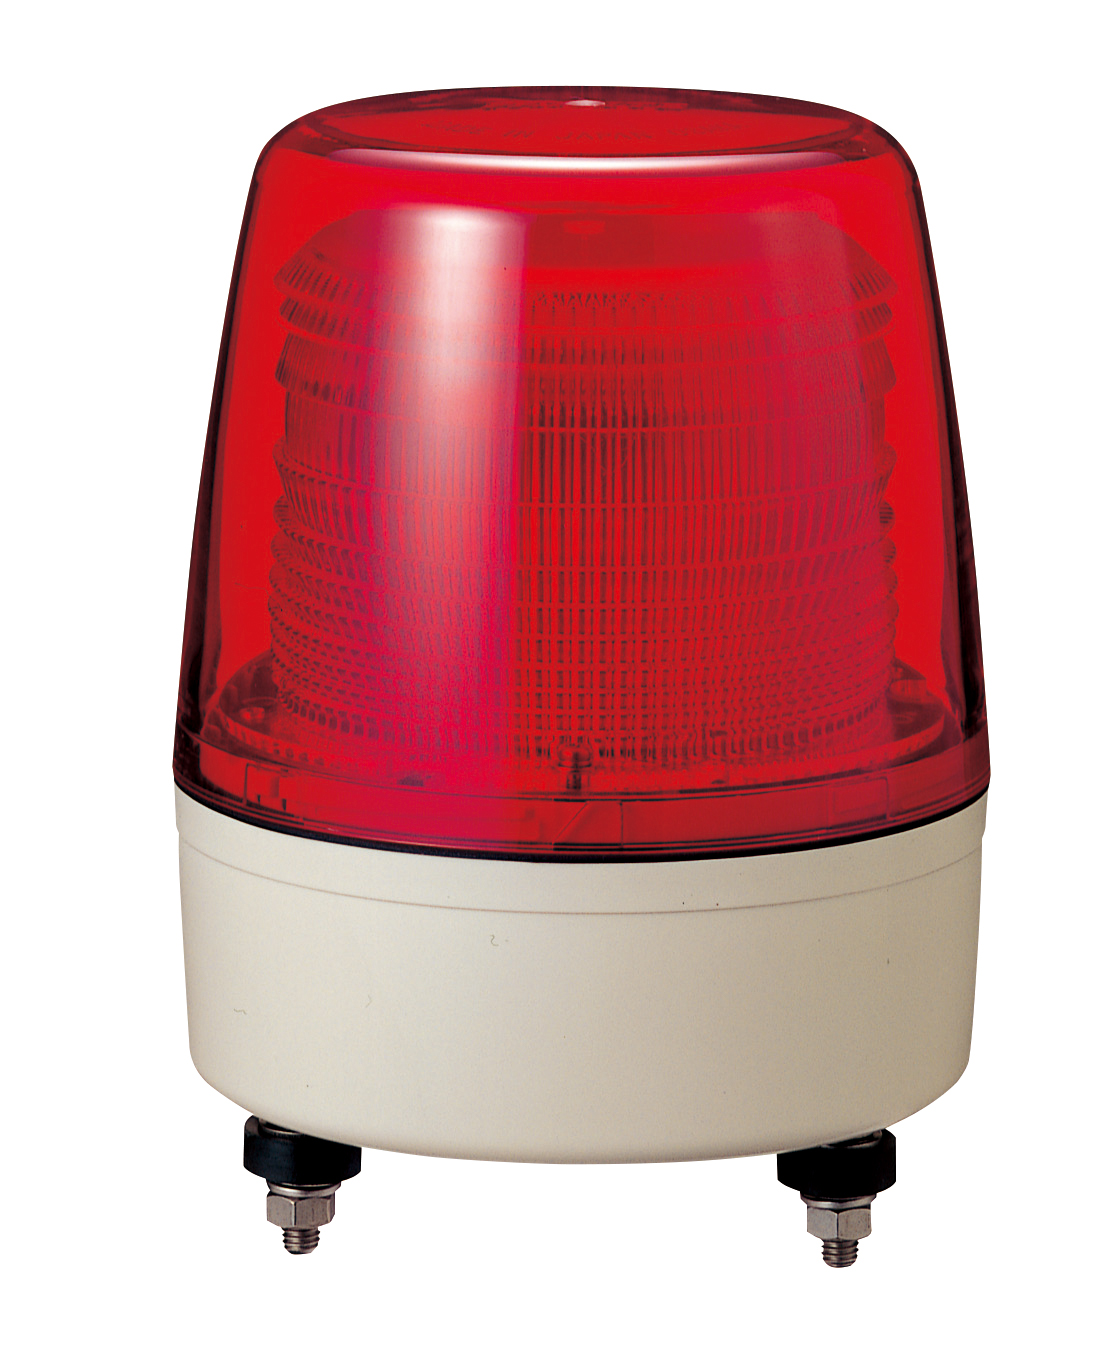 パトライト 中型回転灯 SKP-110A-R φ138 赤色 - 1